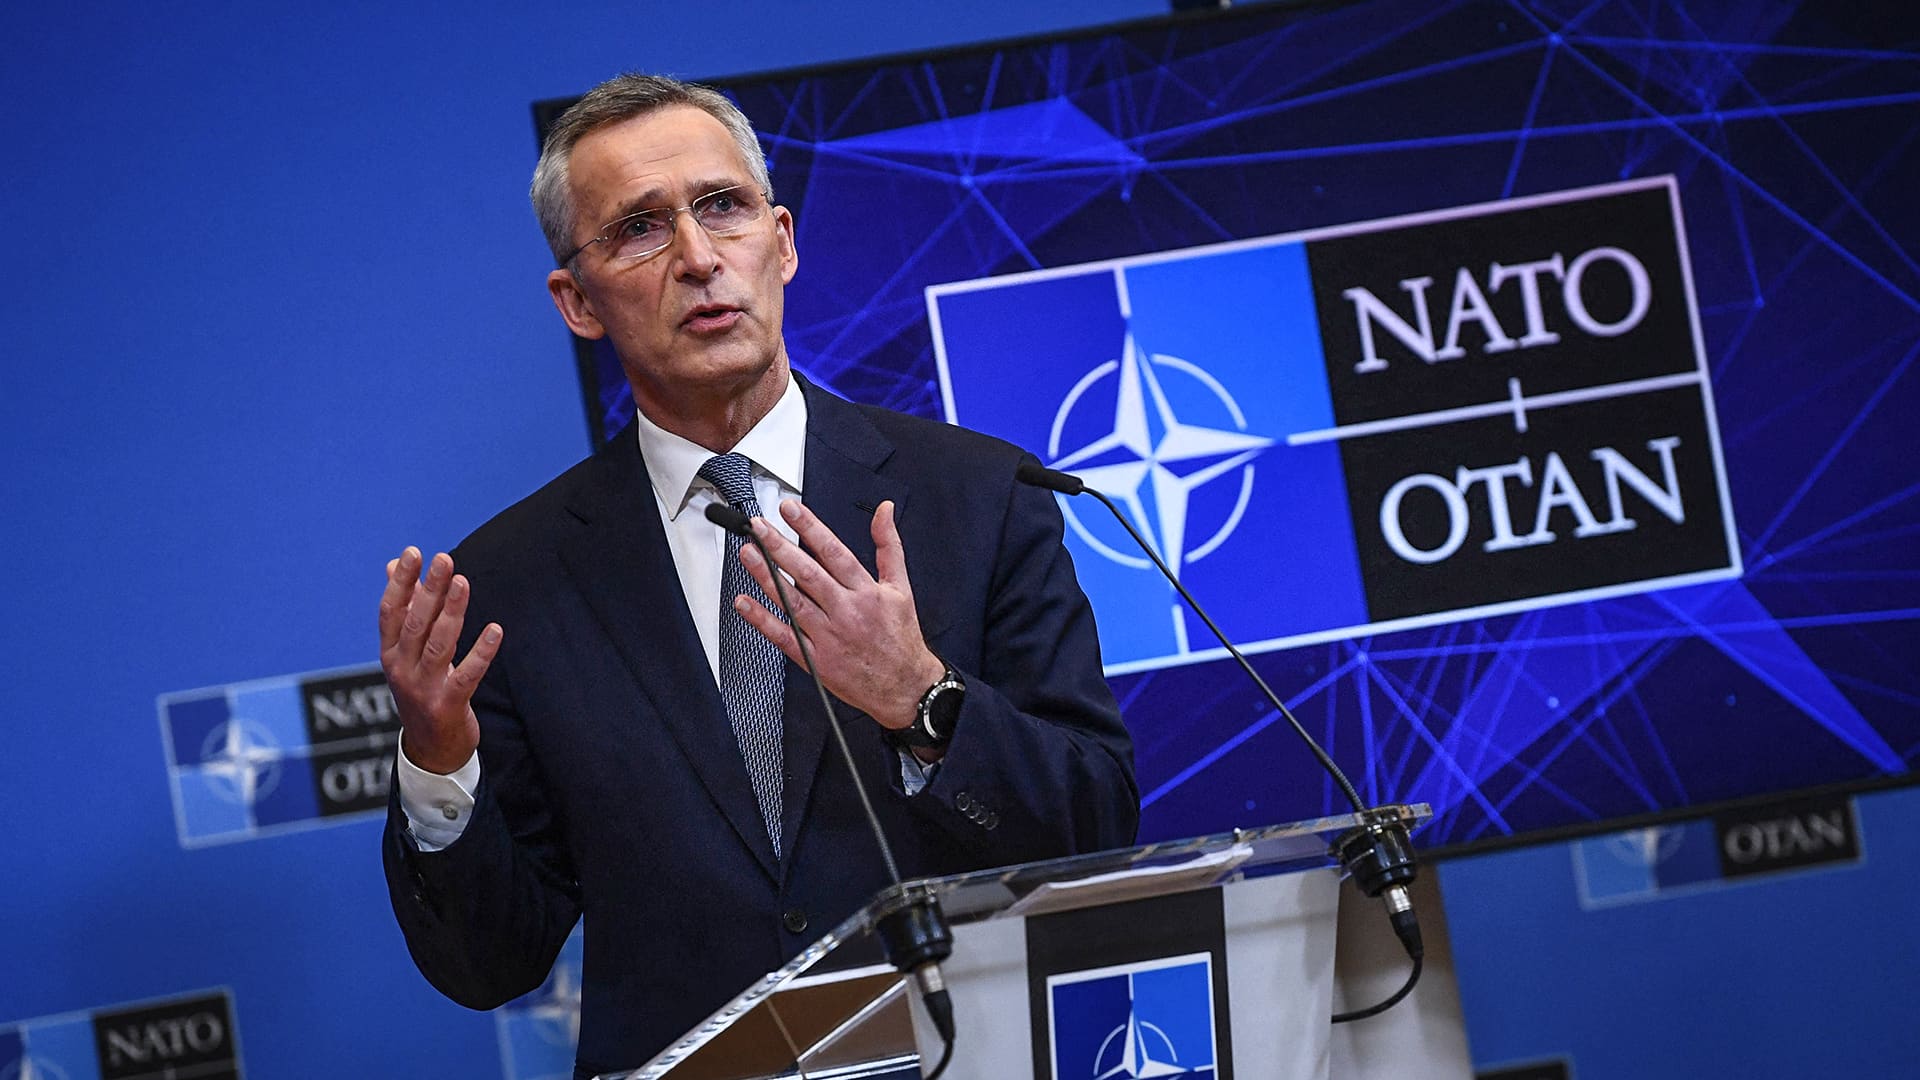 Nyky-Naton vaikutusvalta